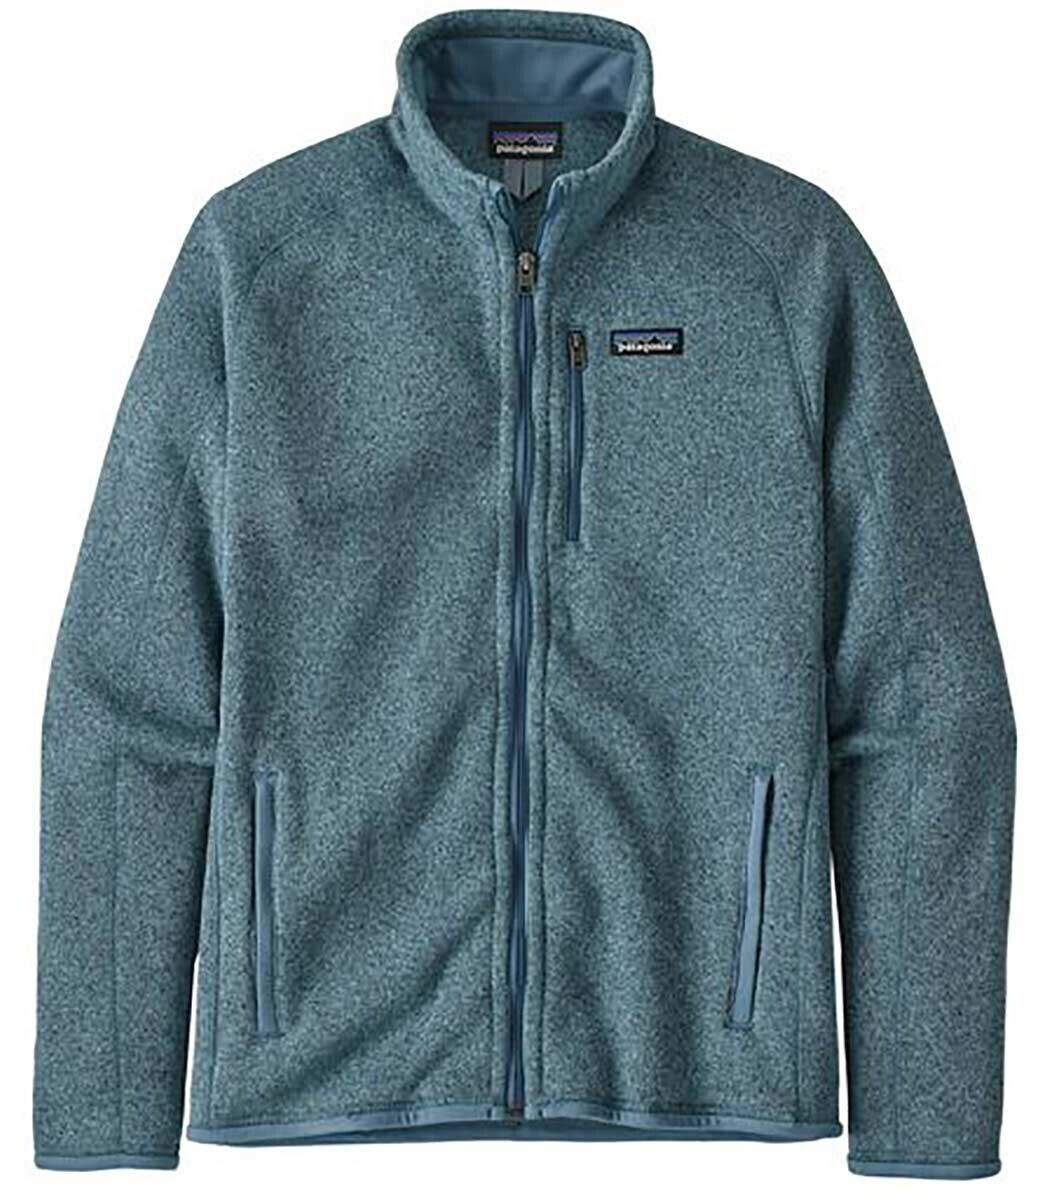 Buy Patagonia Men's Better Sweater Fleece Jacket (25528) pigeon blue ...